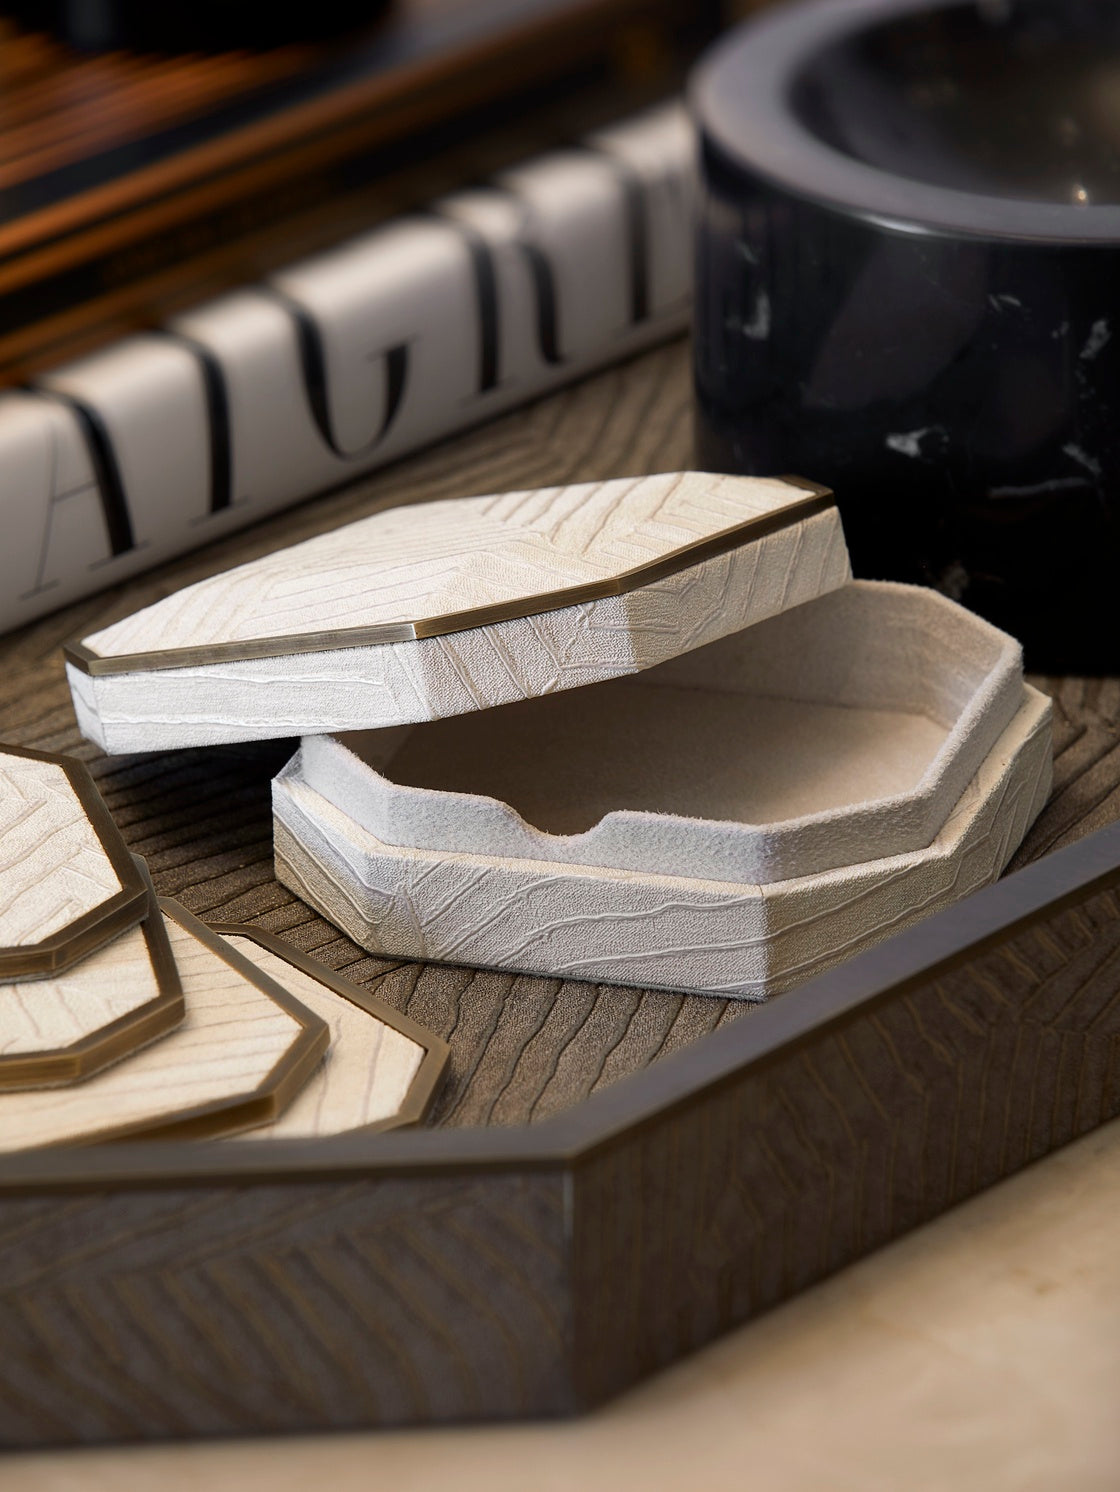 Elemental Coasters, set of 4 - Ivory